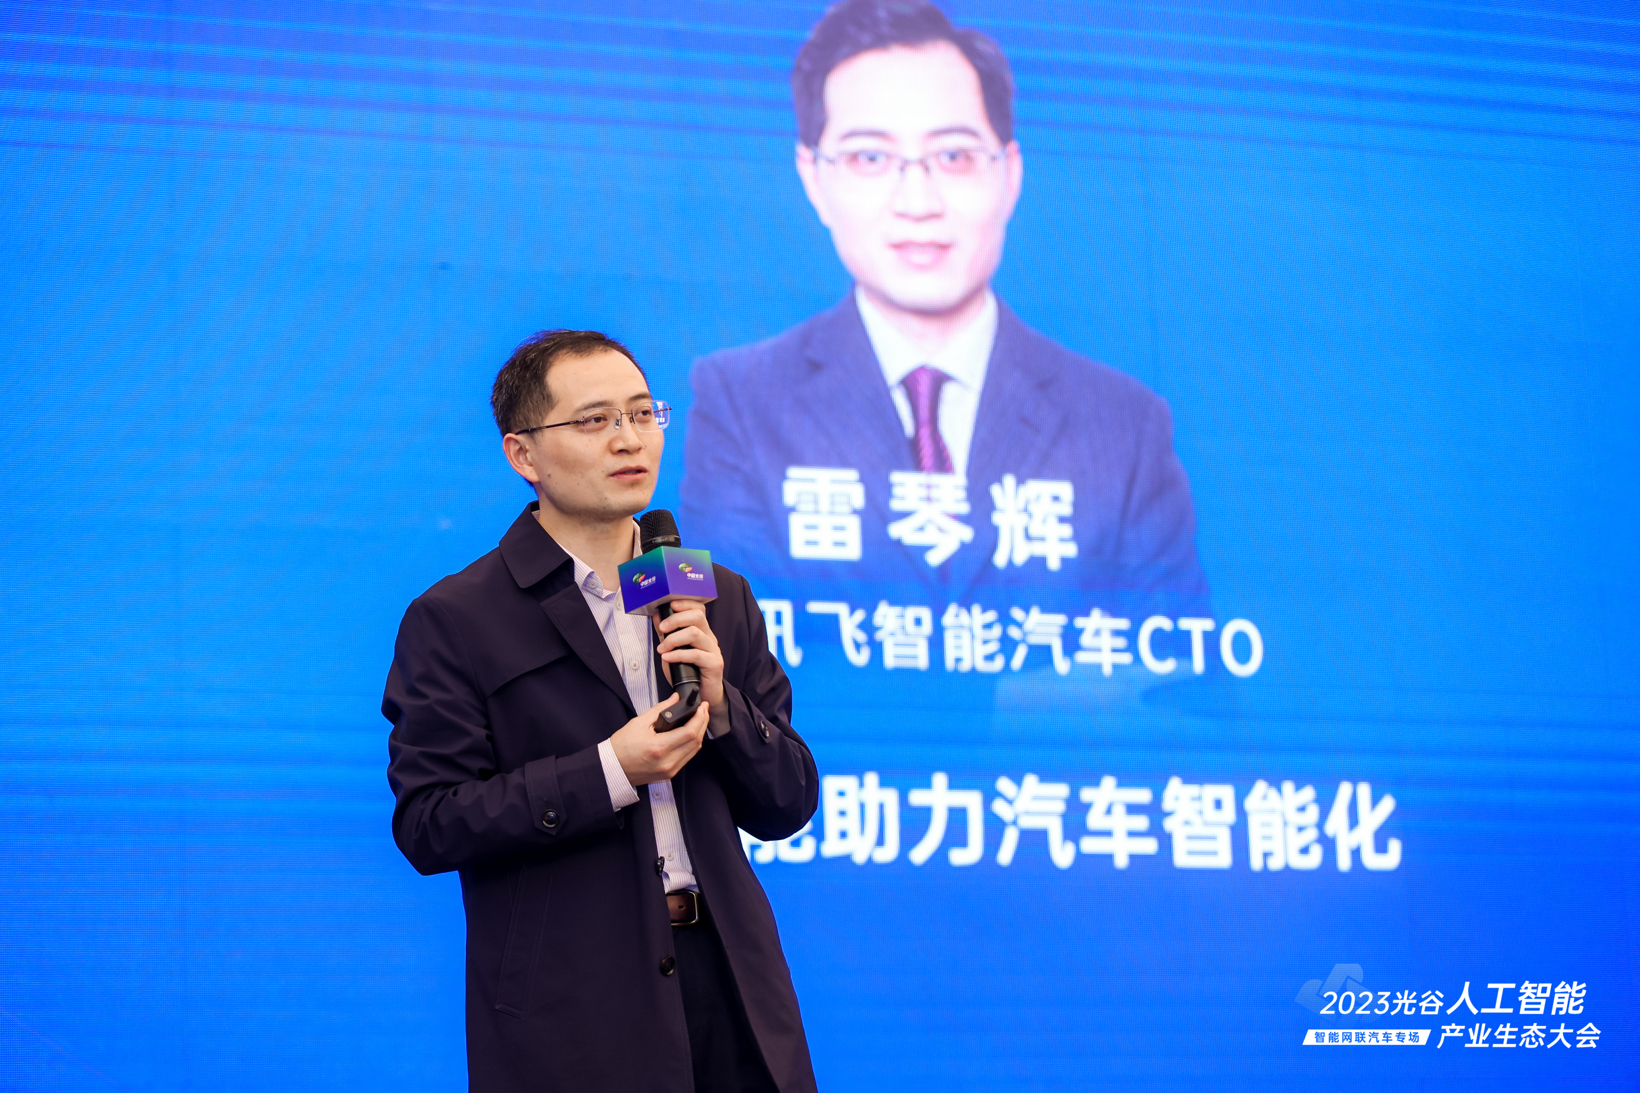 AI点亮中国光谷 | “2023光谷人工智能产业生态大会——智能网联汽车专场”于武汉成功举办